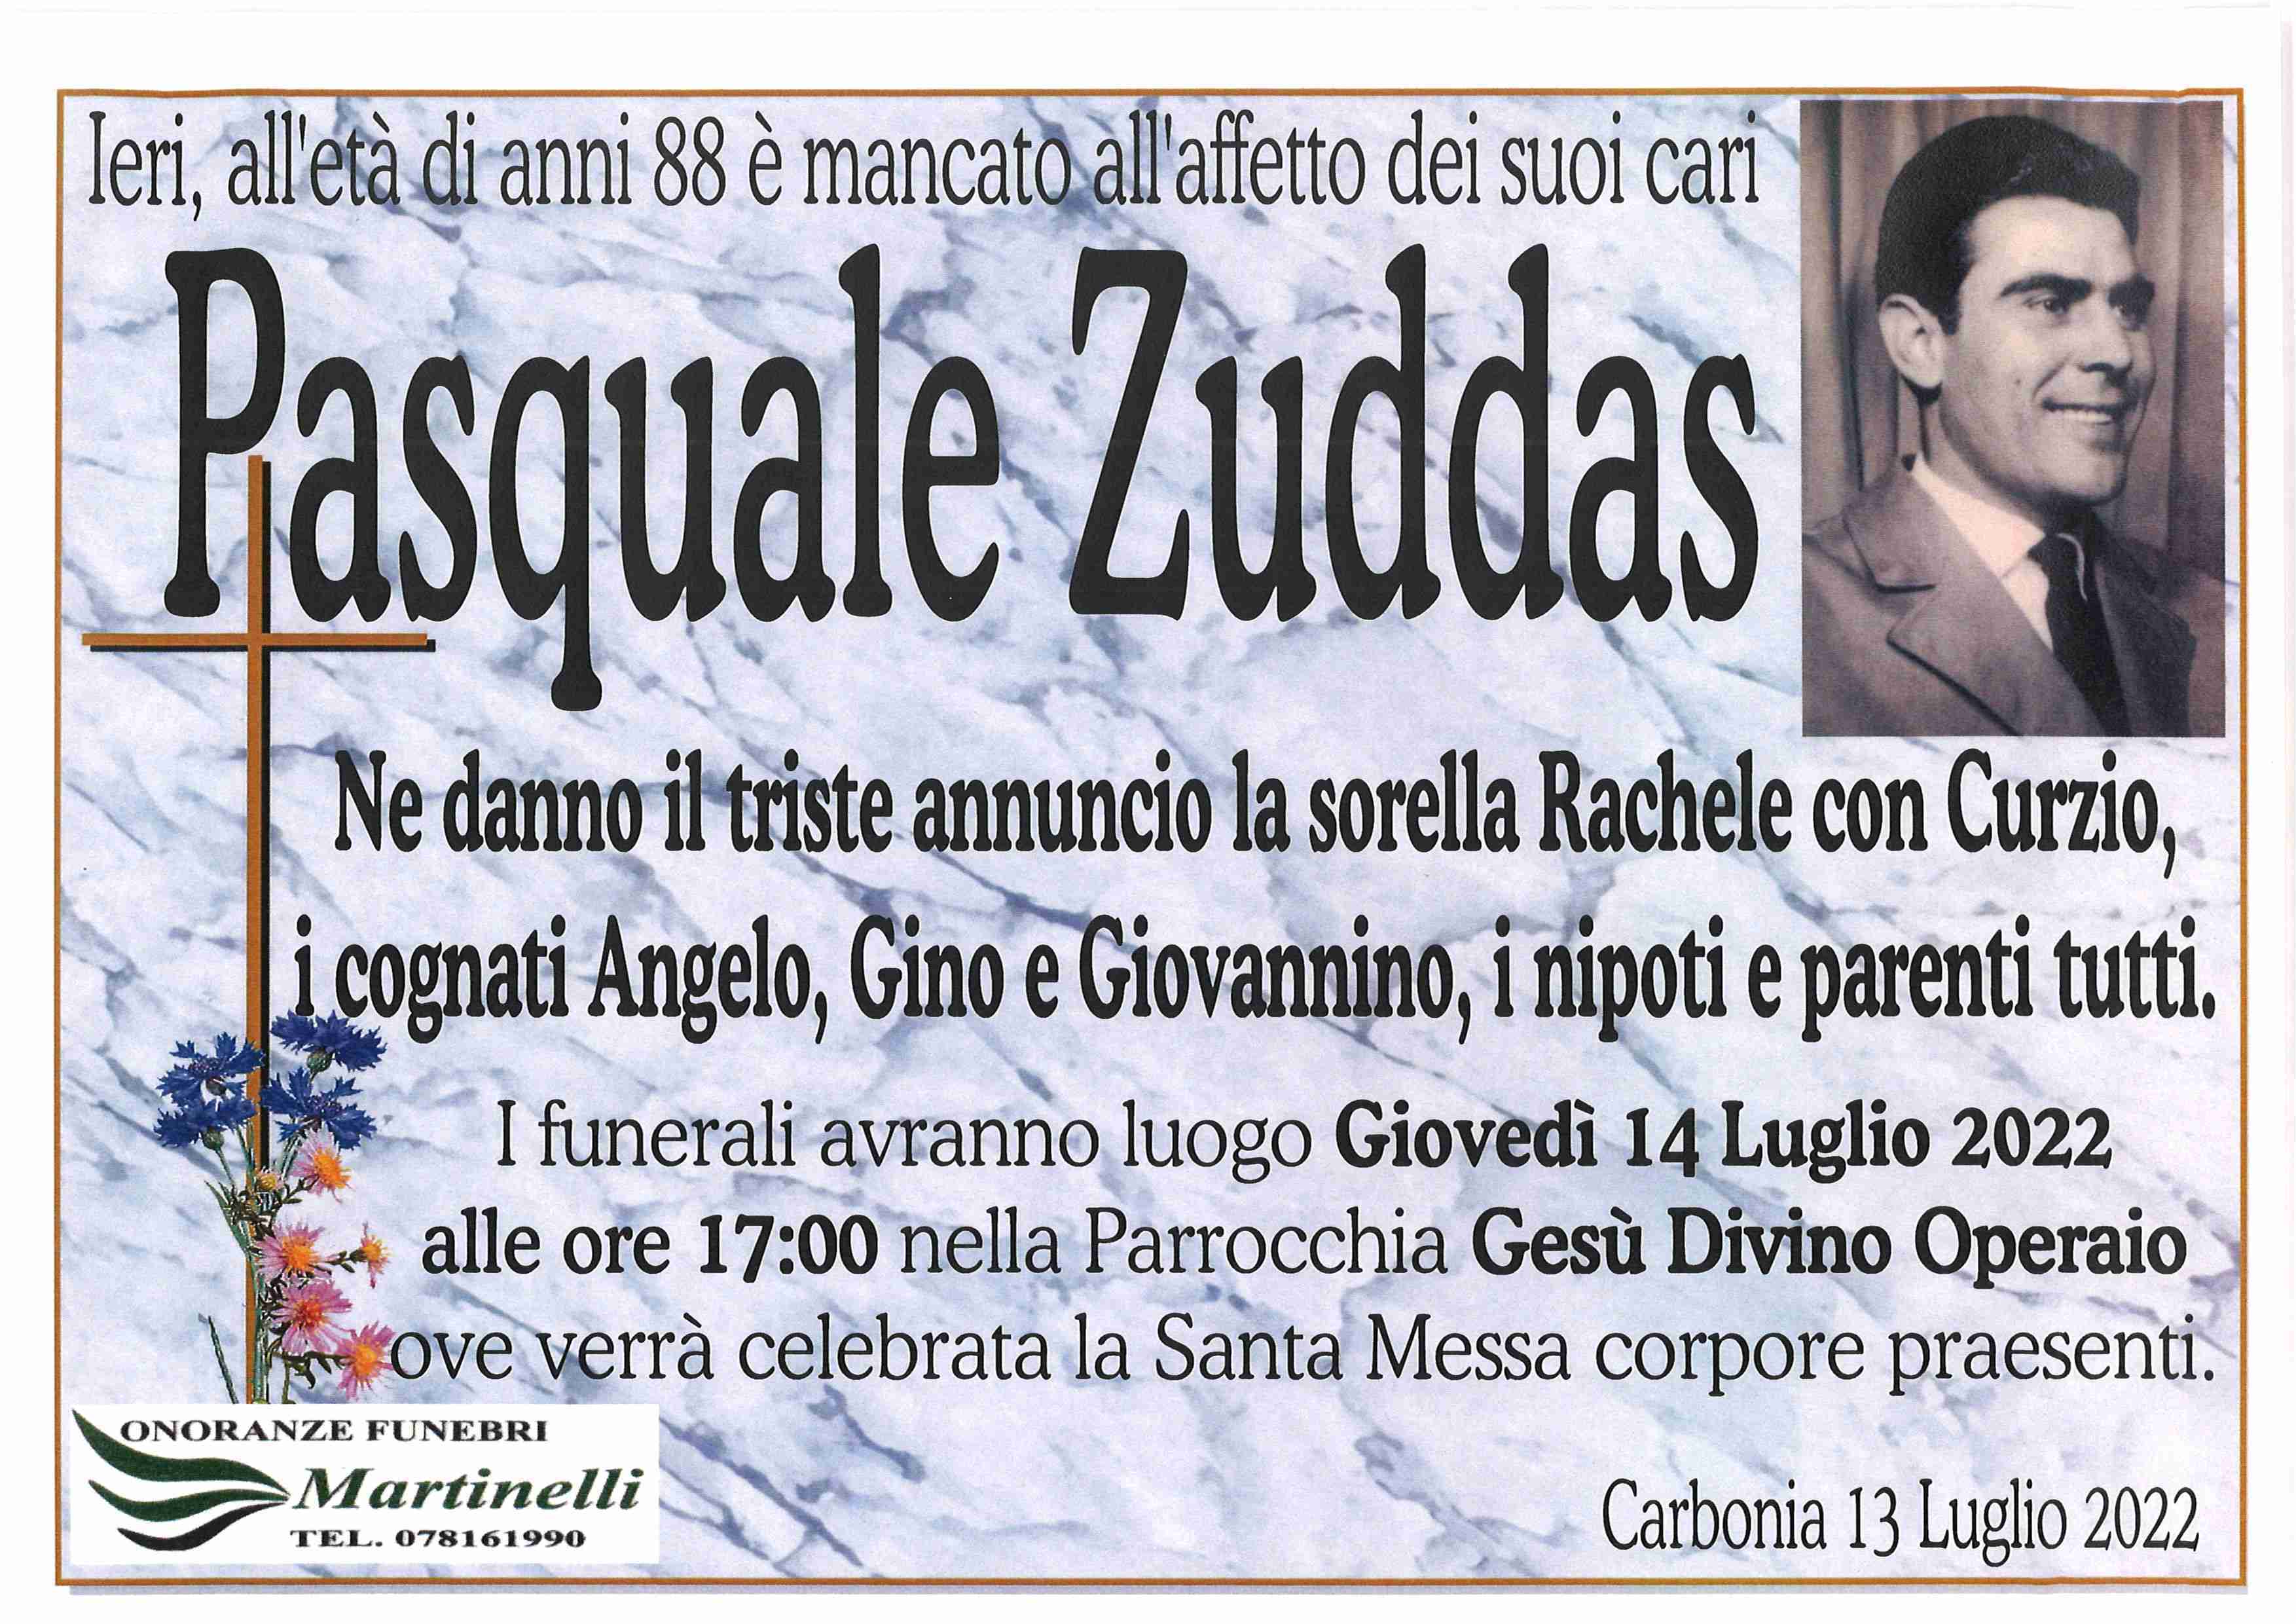 Pasquale Zuddas